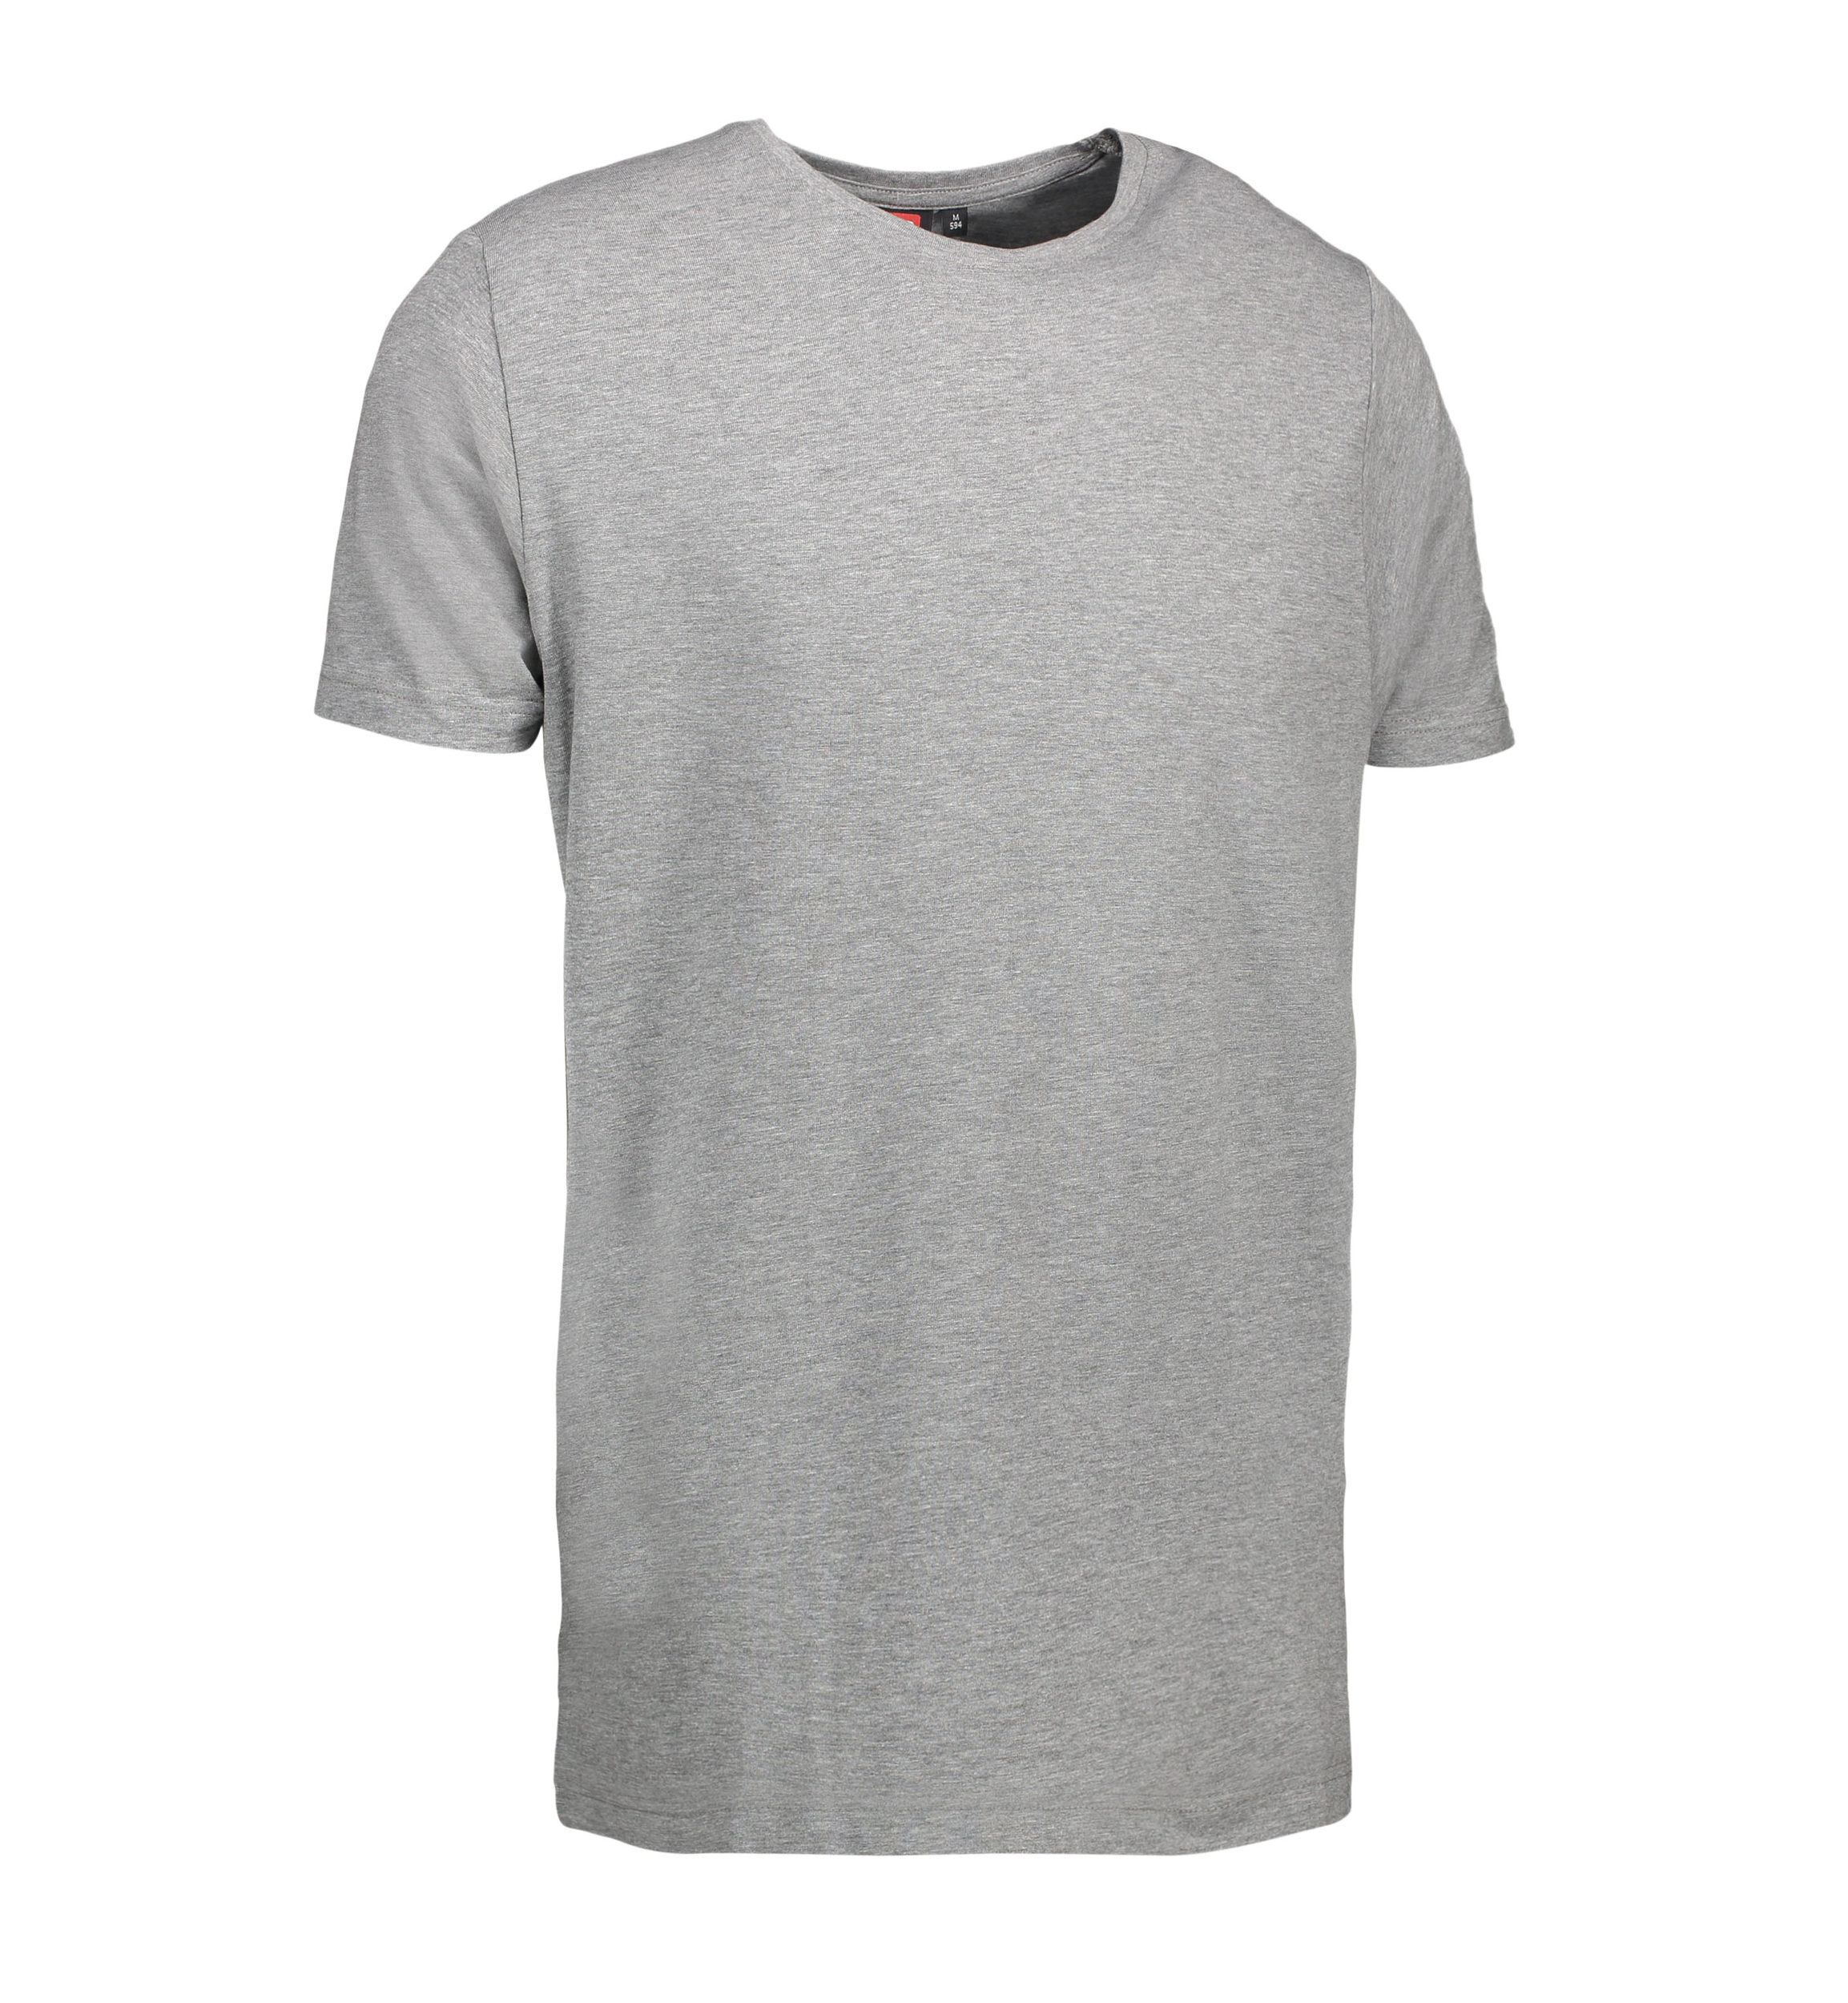 Billede af Stretch t-shirt til mænd i grå - 2XL hos Sygeplejebutikken.dk